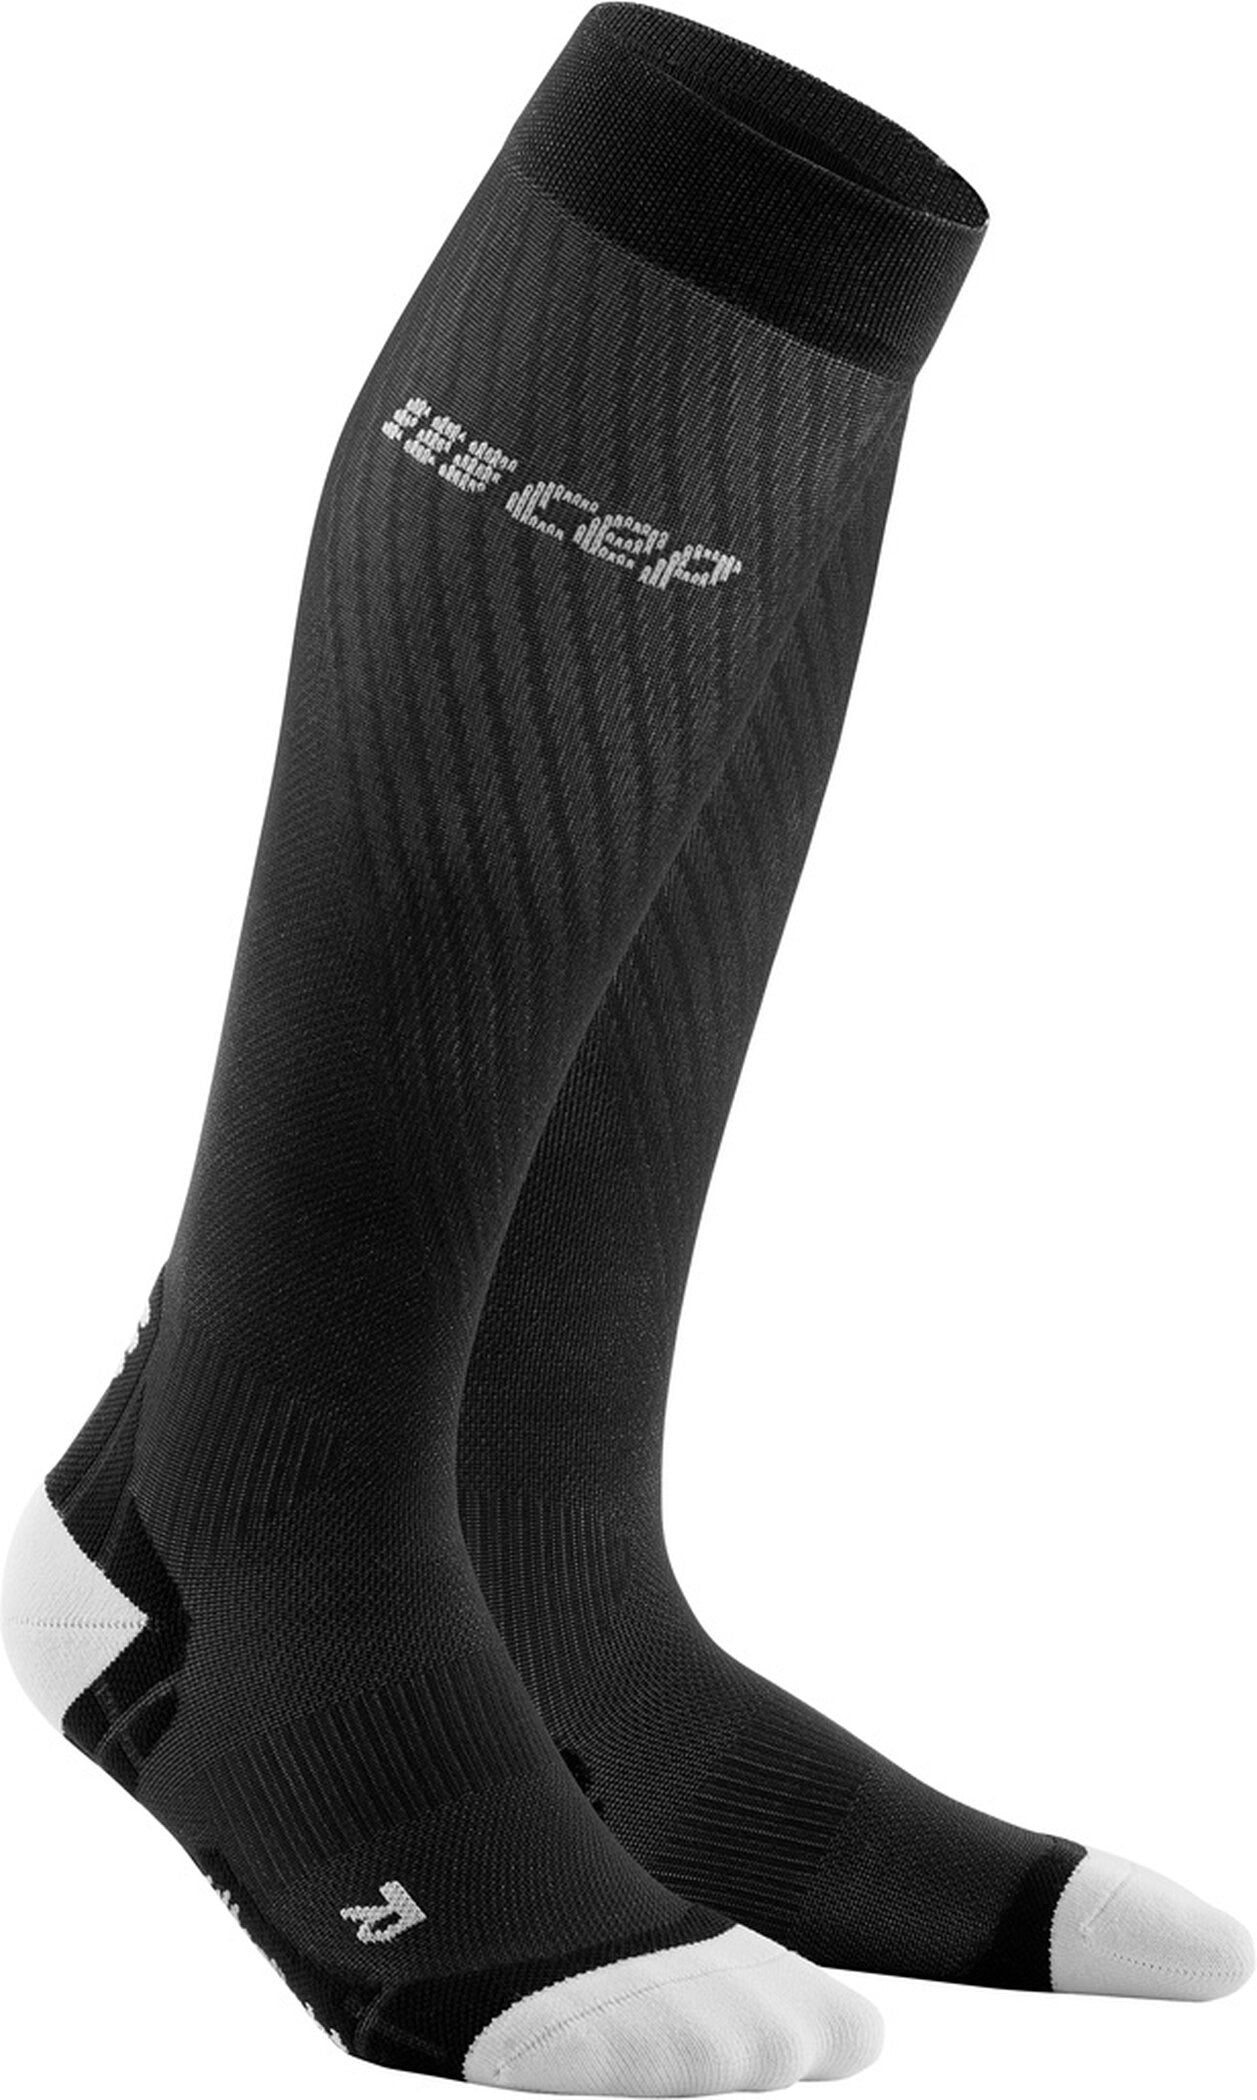 Ultralight Compression Run Socks